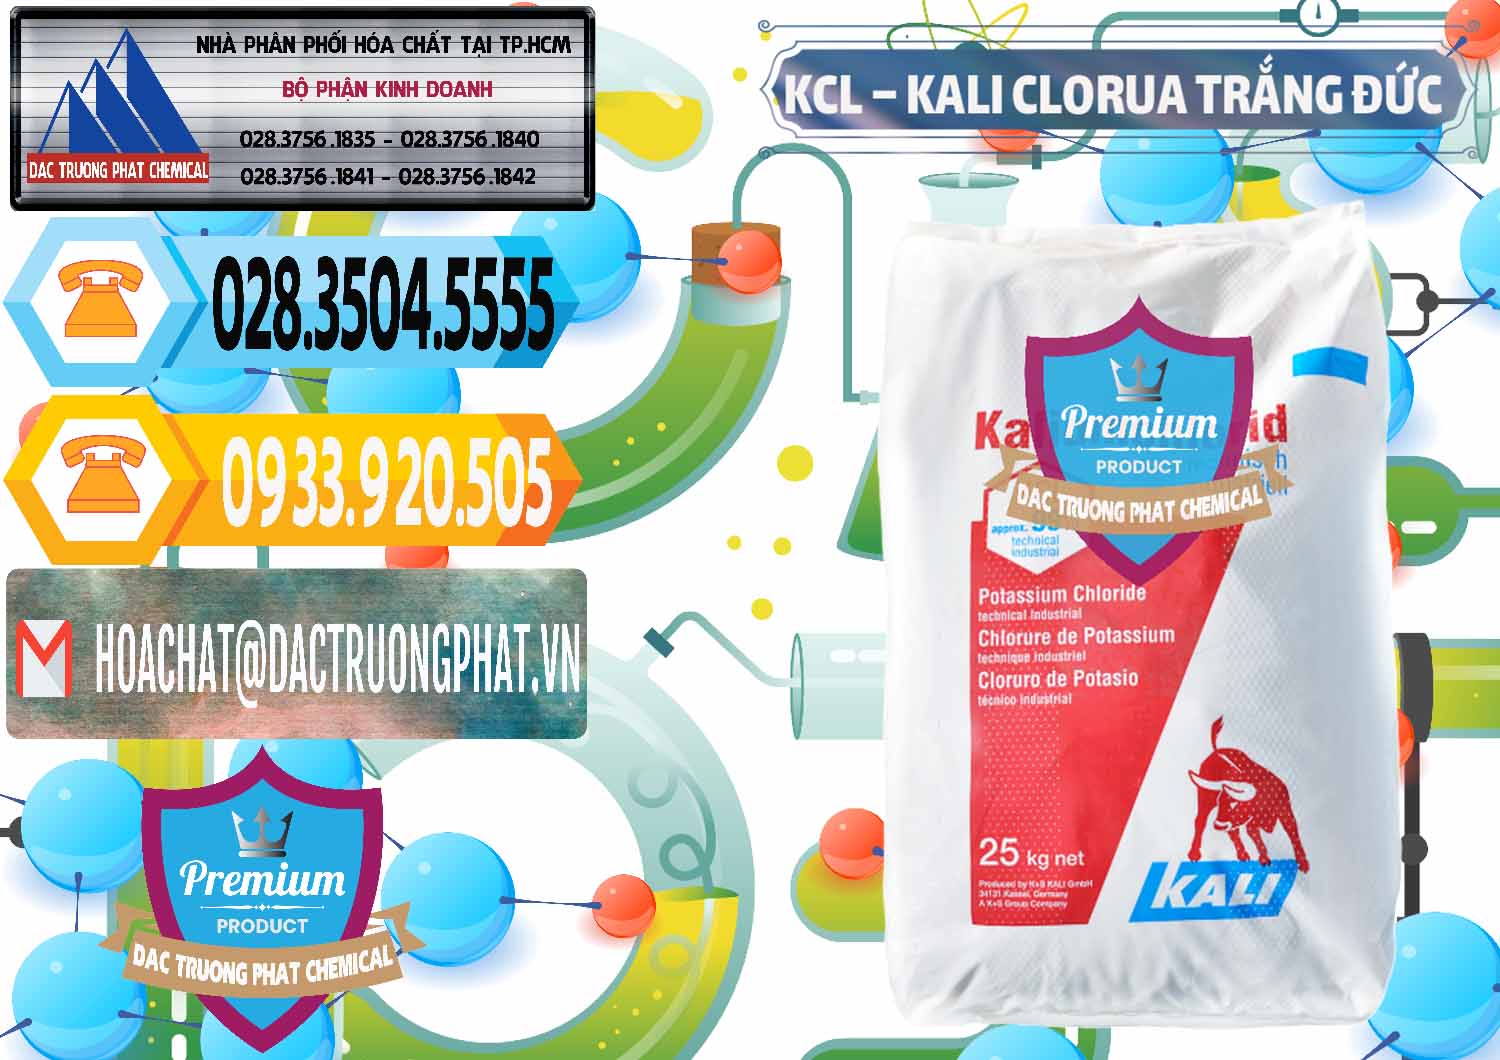 Đơn vị chuyên kinh doanh và bán KCL – Kali Clorua Trắng Đức Germany - 0086 - Đơn vị chuyên cung cấp ( nhập khẩu ) hóa chất tại TP.HCM - hoachattayrua.net